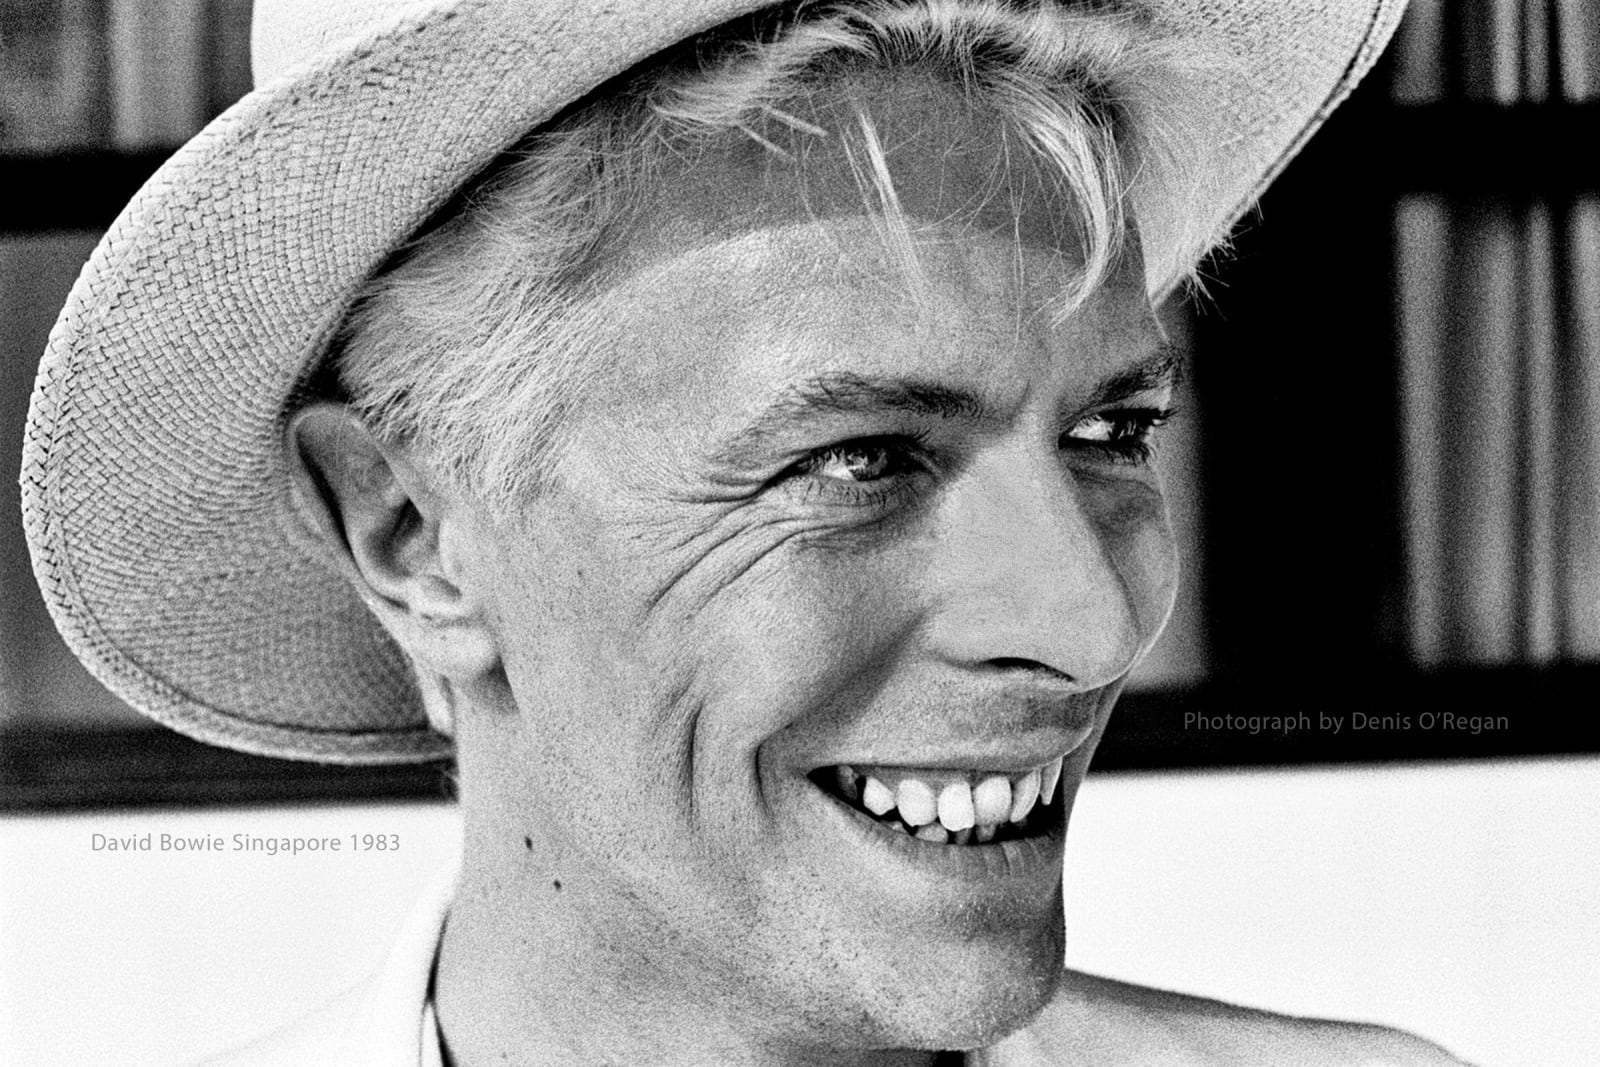 DAVID BOWIE, David Bowie Singapore, 1983